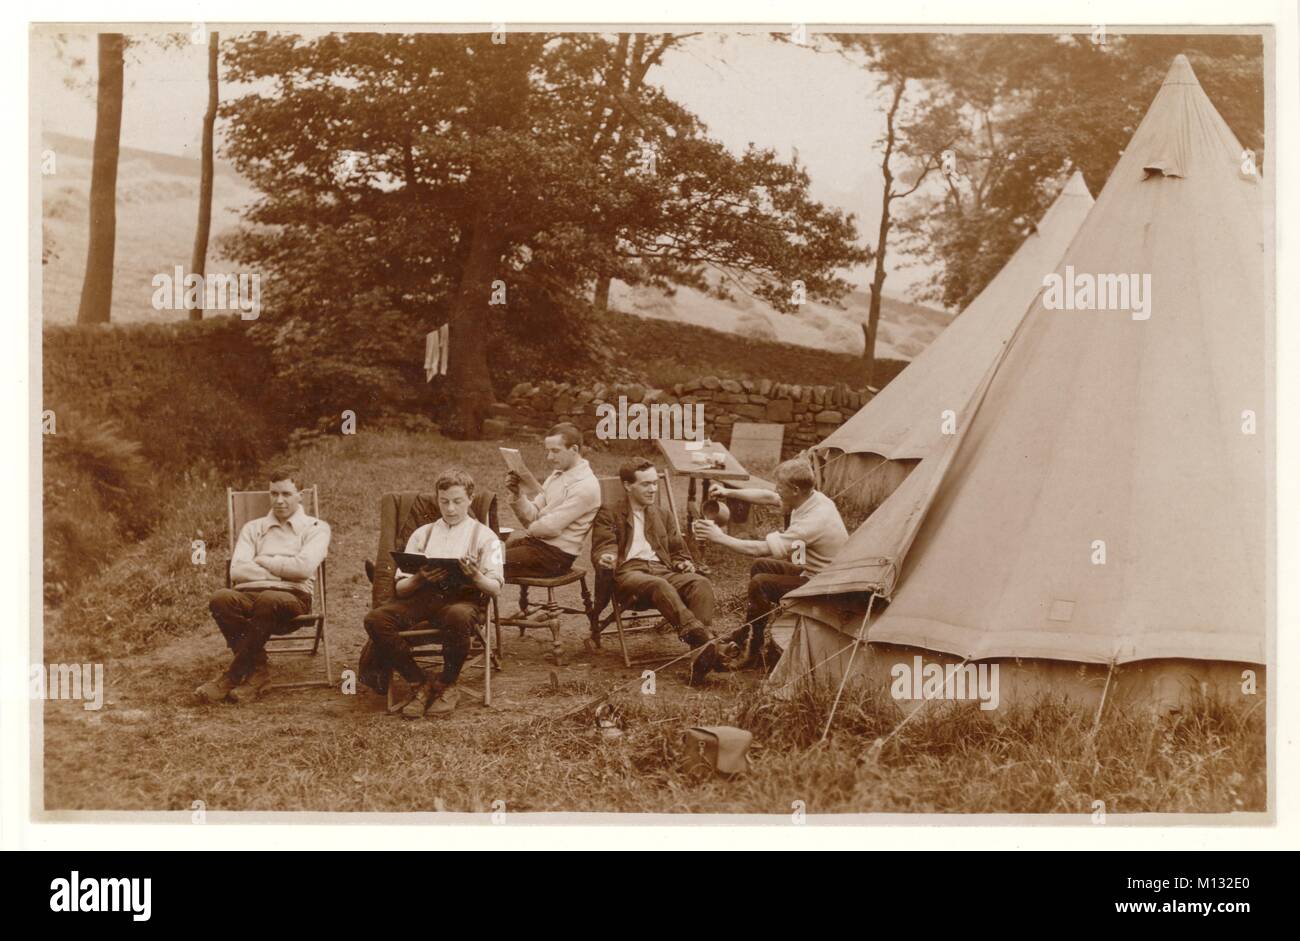 Early1900s carte postale de jeunes hommes campant, se détendre sur des chaises dehors. Un homme lit un livre, un journal et un autre verse une tasse de thé. Le foin fraîchement mouwn sèche en rangées de rooks dans les champs derrière. Vers l'été 1920, Royaume-Uni Banque D'Images